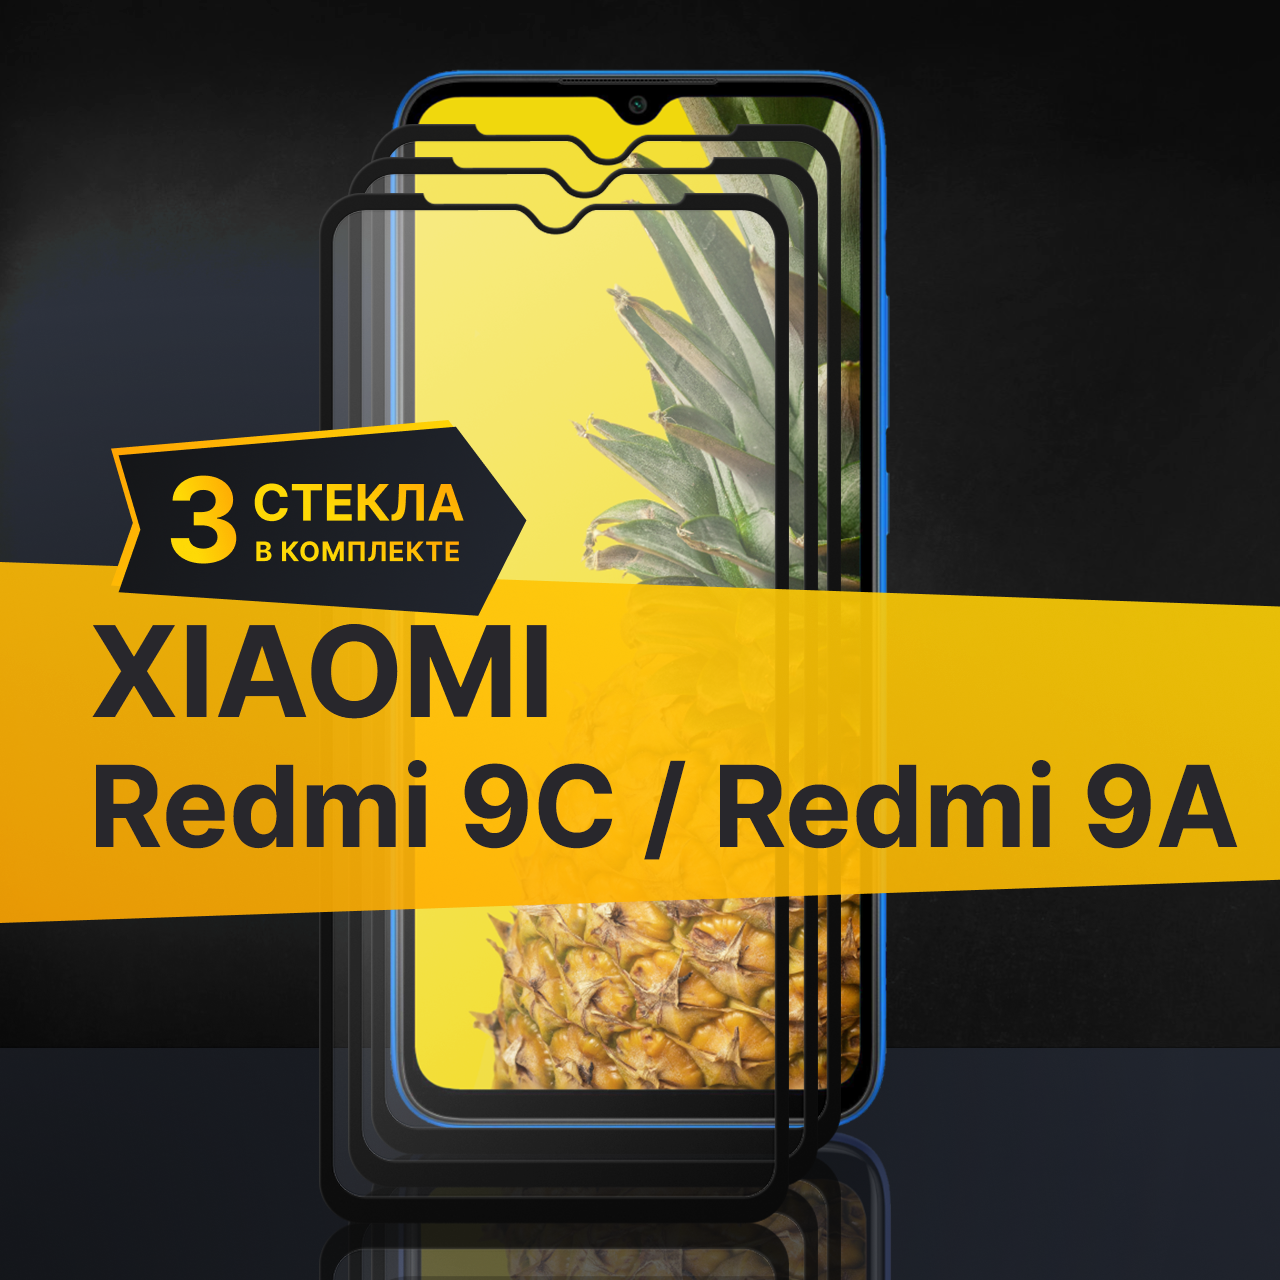 Комплект 3 шт. Противоударное защитное стекло для телефона Xiaomi Redmi 9C и Redmi 9A / Полноклеевое 3D стекло с олеофобным покрытием на смартфон Сяоми Редми 9С и Редми 9А / С черной рамкой